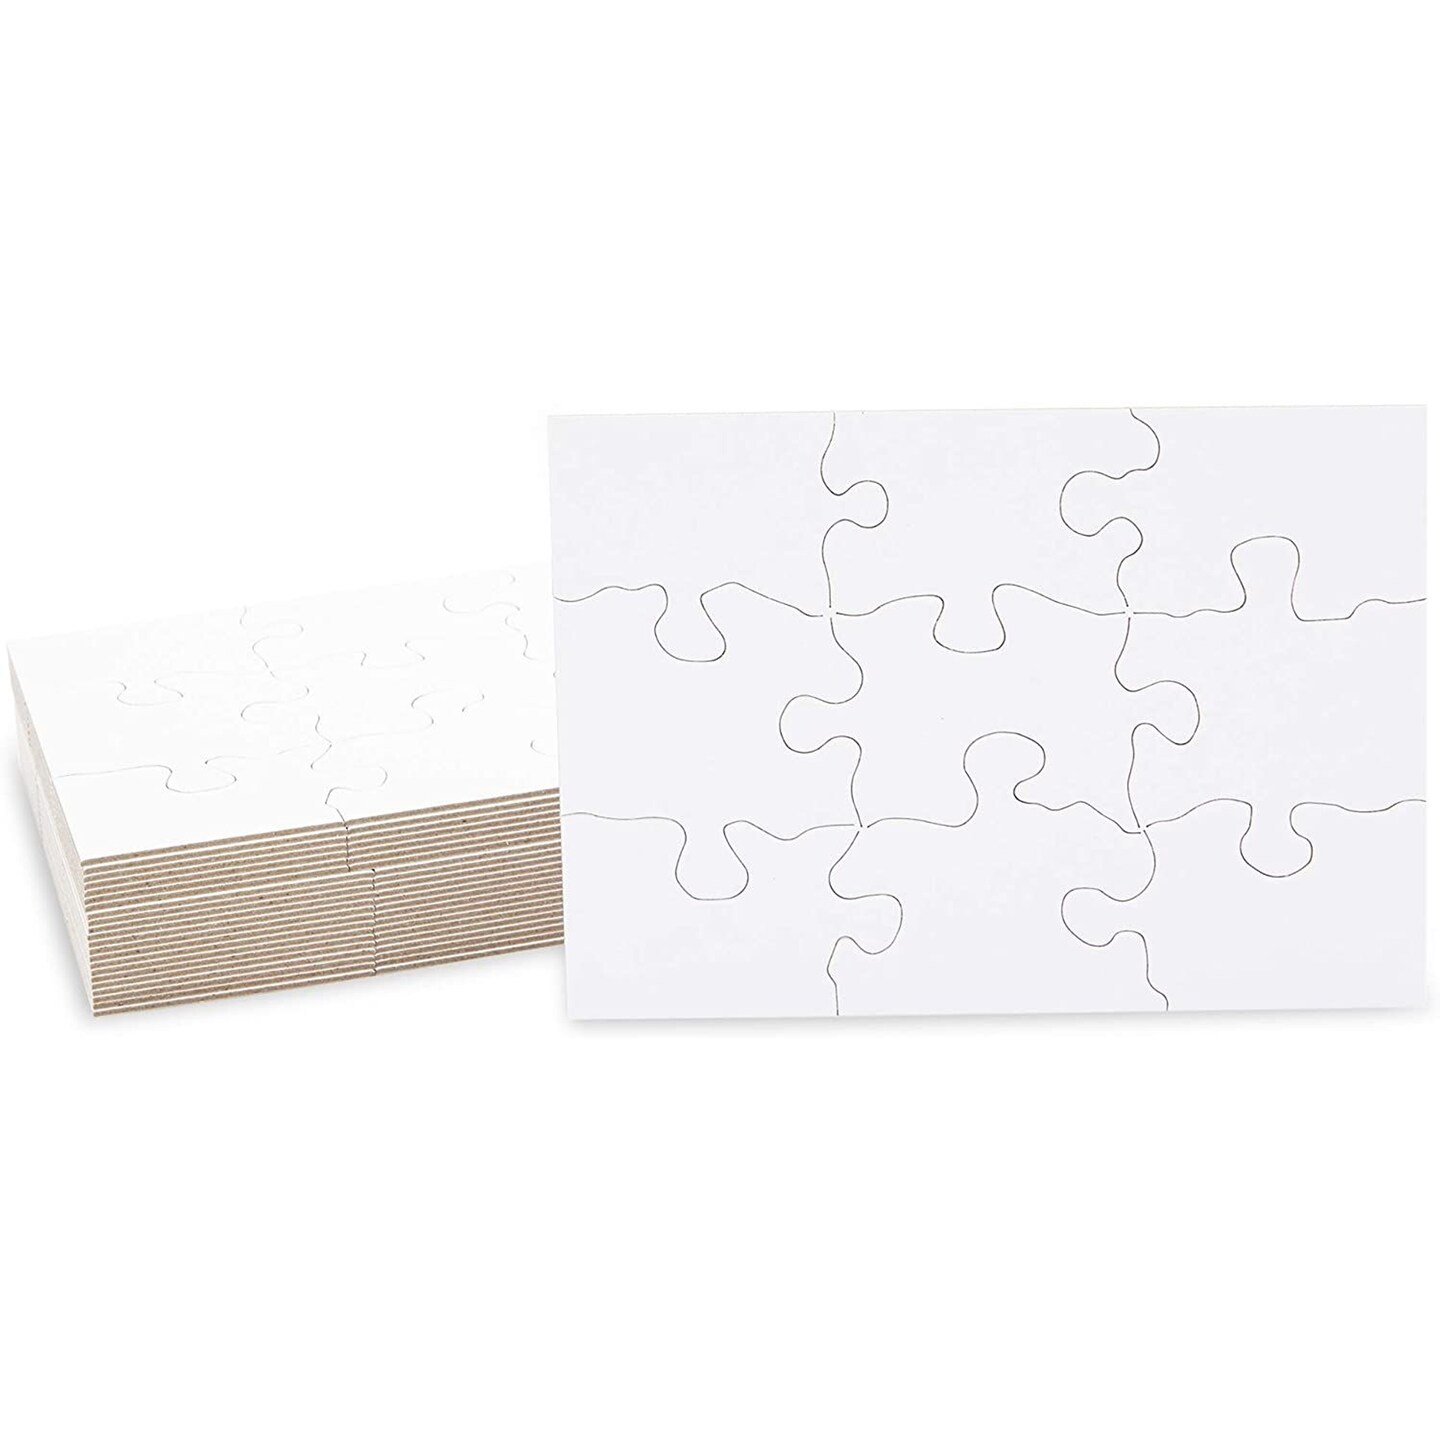 Blank Sublimation Puzzles Wholesale Bulk Puzzles for Sublimation